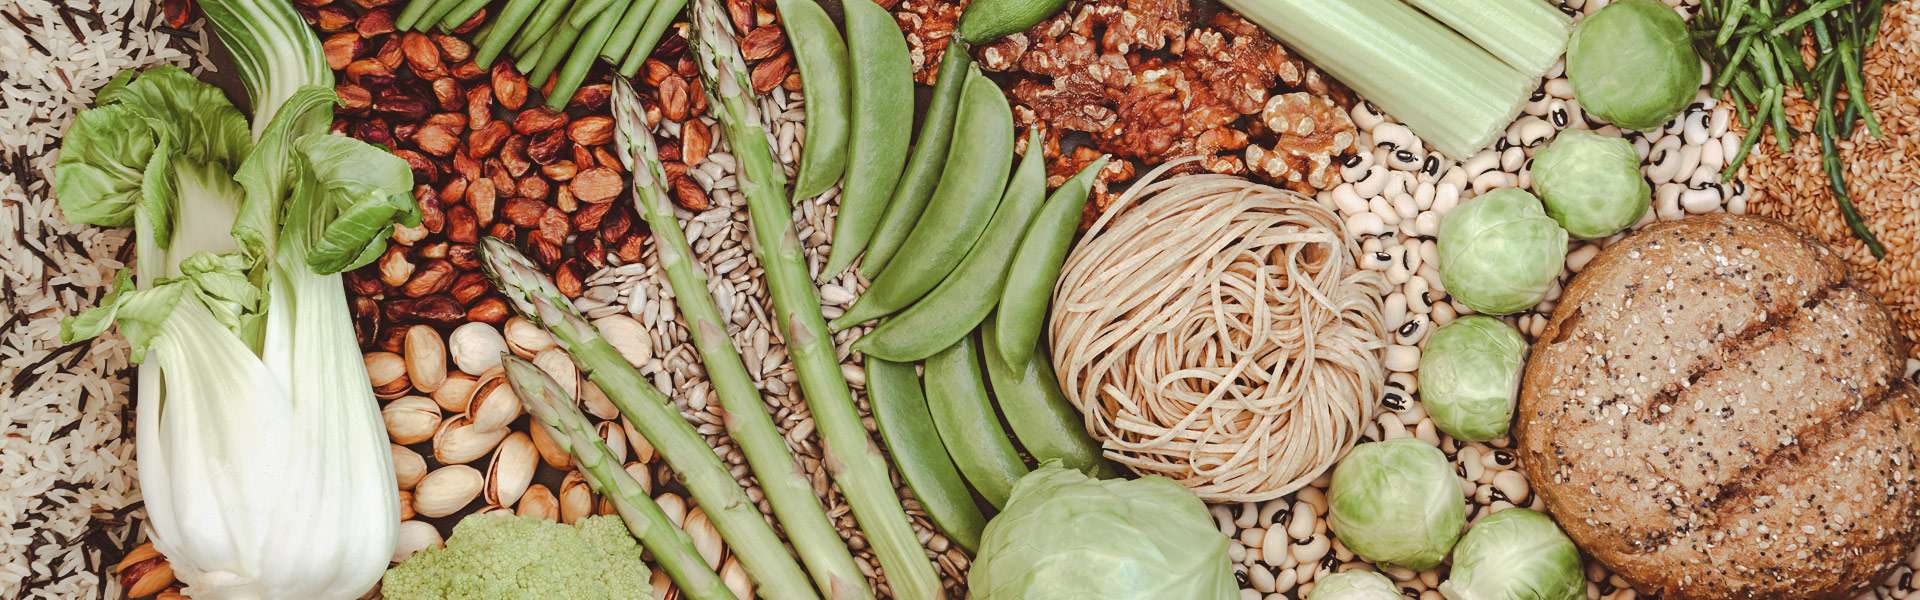 L’importanza dei vegetali e delle fibre nell’alimentazione